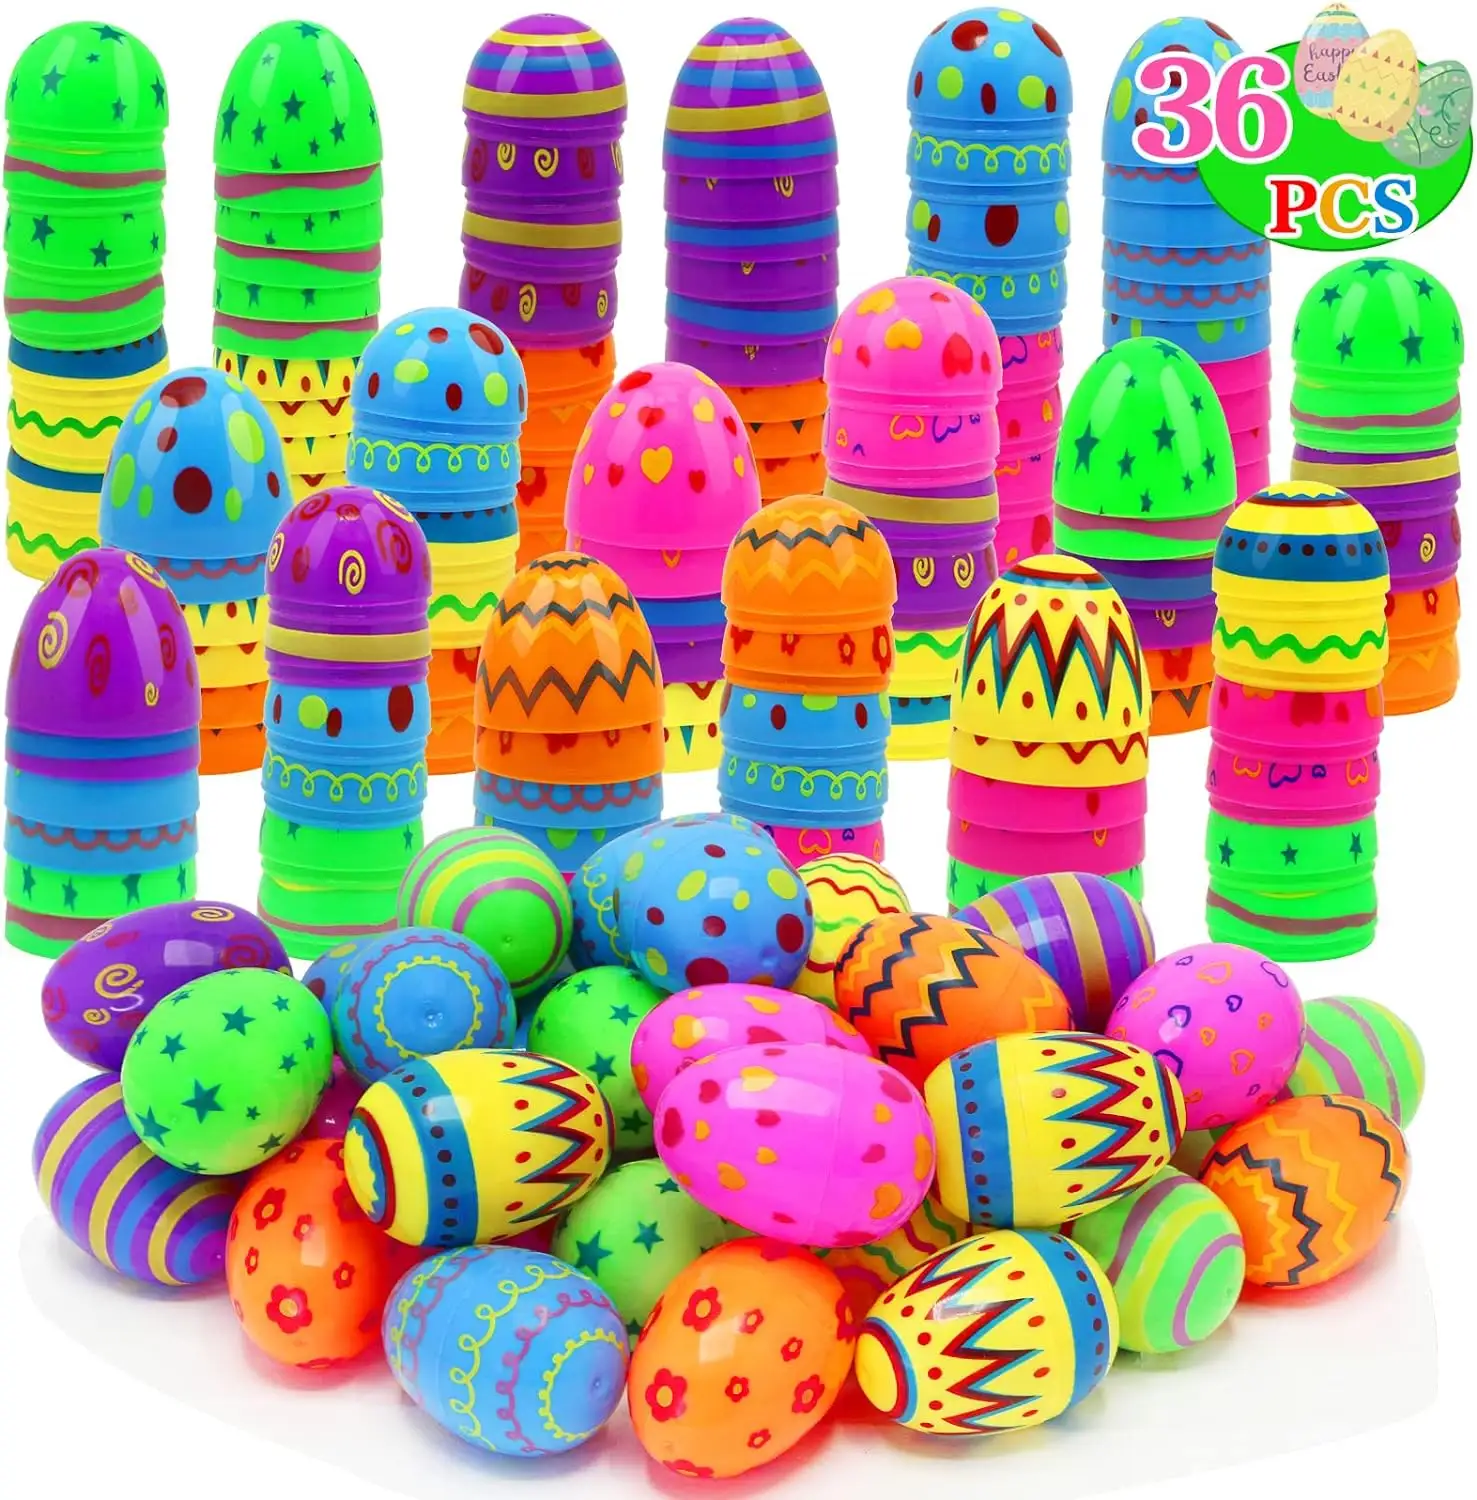 Renkli paskalya festivali tatil günü partisi dekorasyon malzemeleri çocuk çocuk oyuncakları boş küçük paskalya yumurtaları boyalı yumurta kabuğu setleri